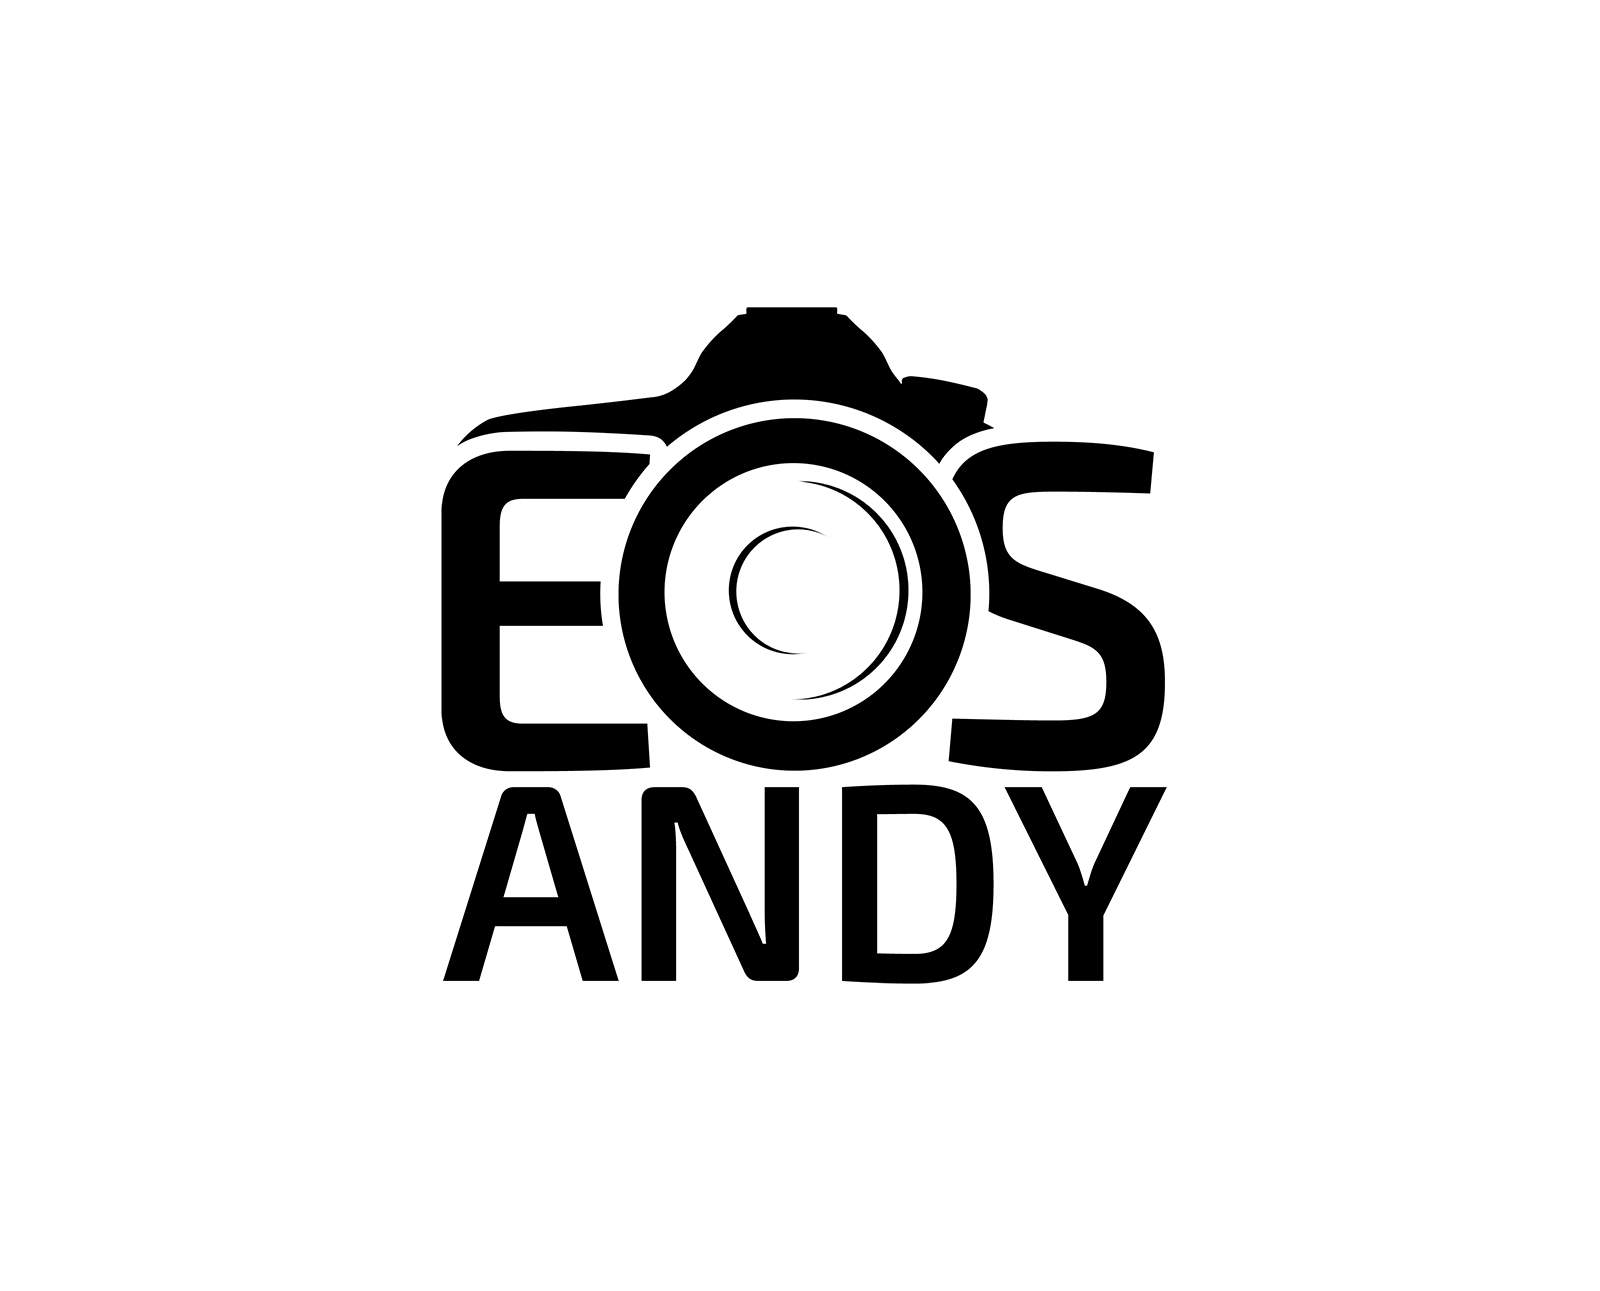 eosandy-logo-referenz-ultim8media-black